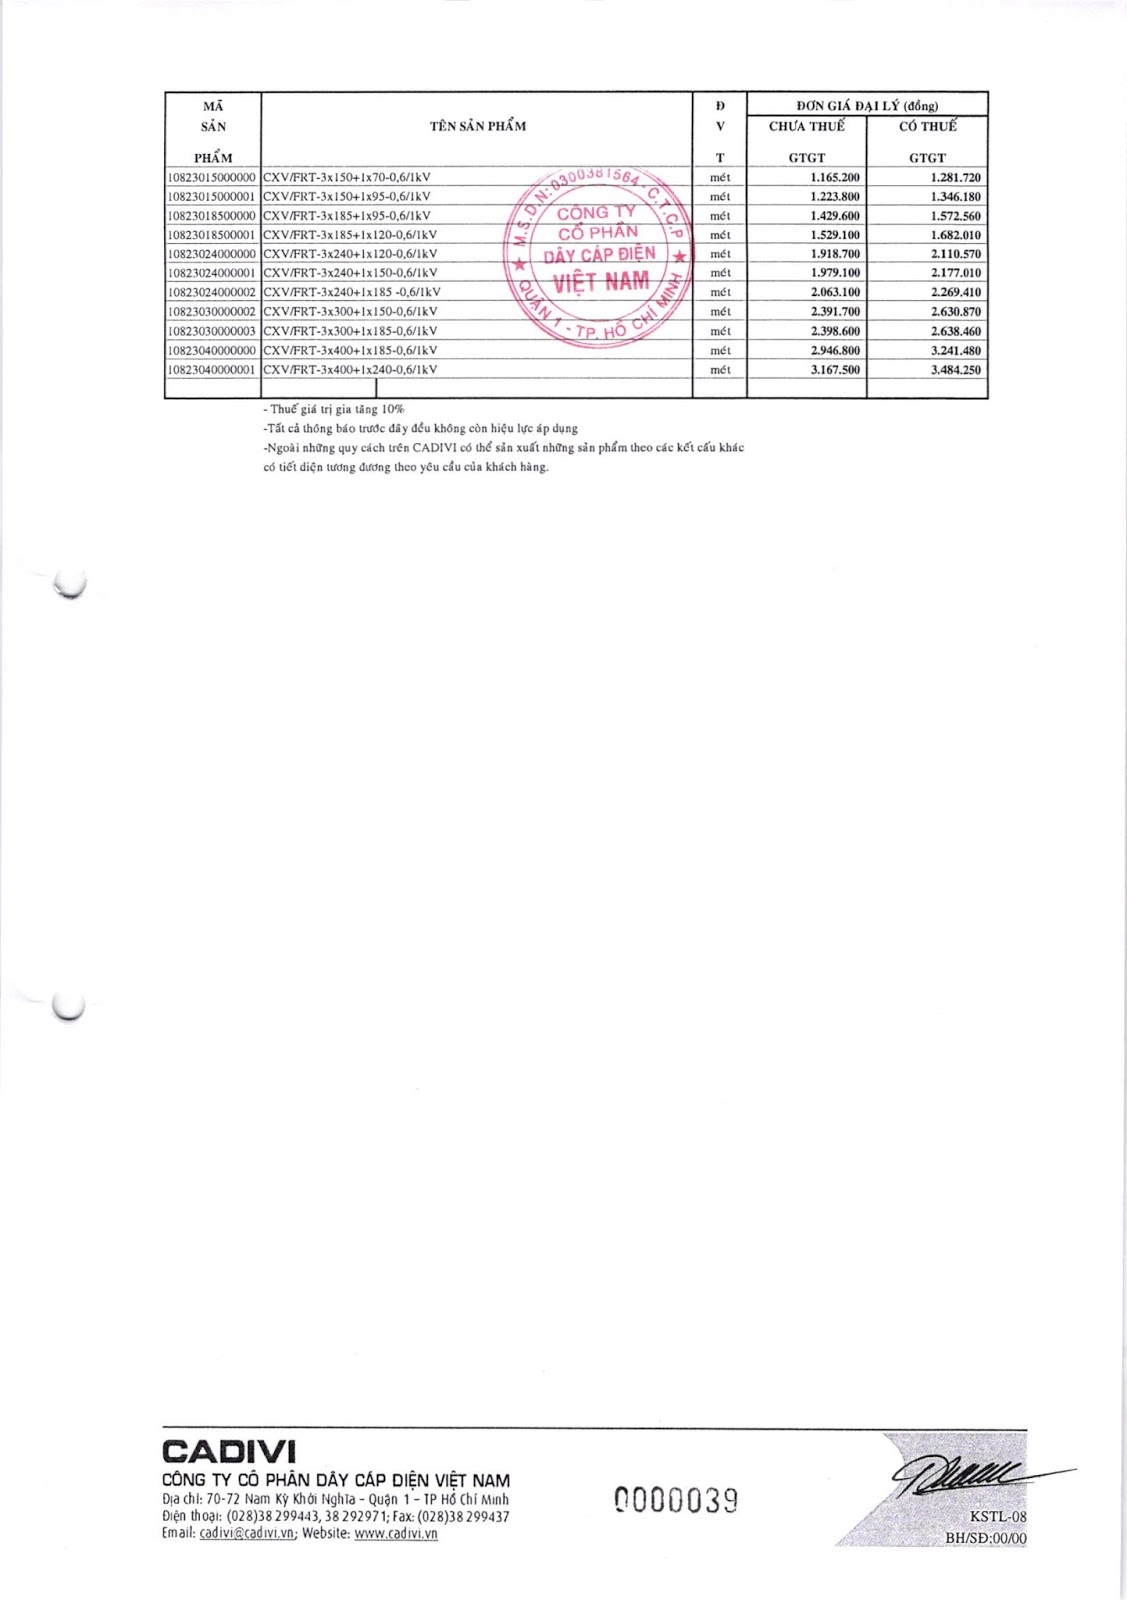 Tải bảng giá catalogue cáp điện Cadivi mới nhất tại Đại lý cấp 1